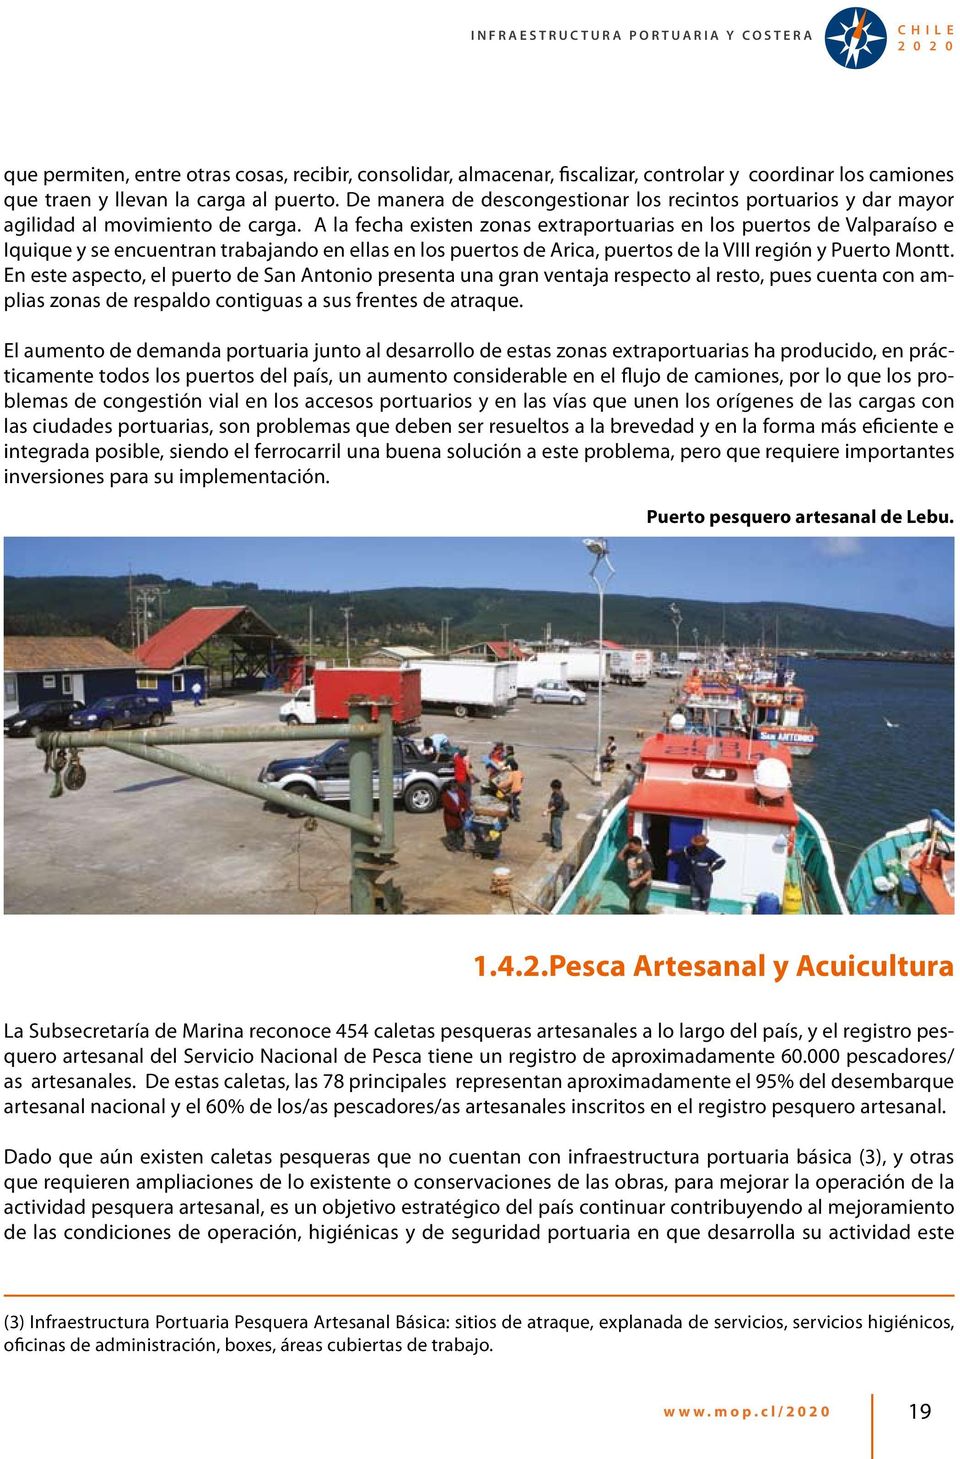 A la fecha existen zonas extraportuarias en los puertos de Valparaíso e Iquique y se encuentran trabajando en ellas en los puertos de Arica, puertos de la VIII región y Puerto Montt.